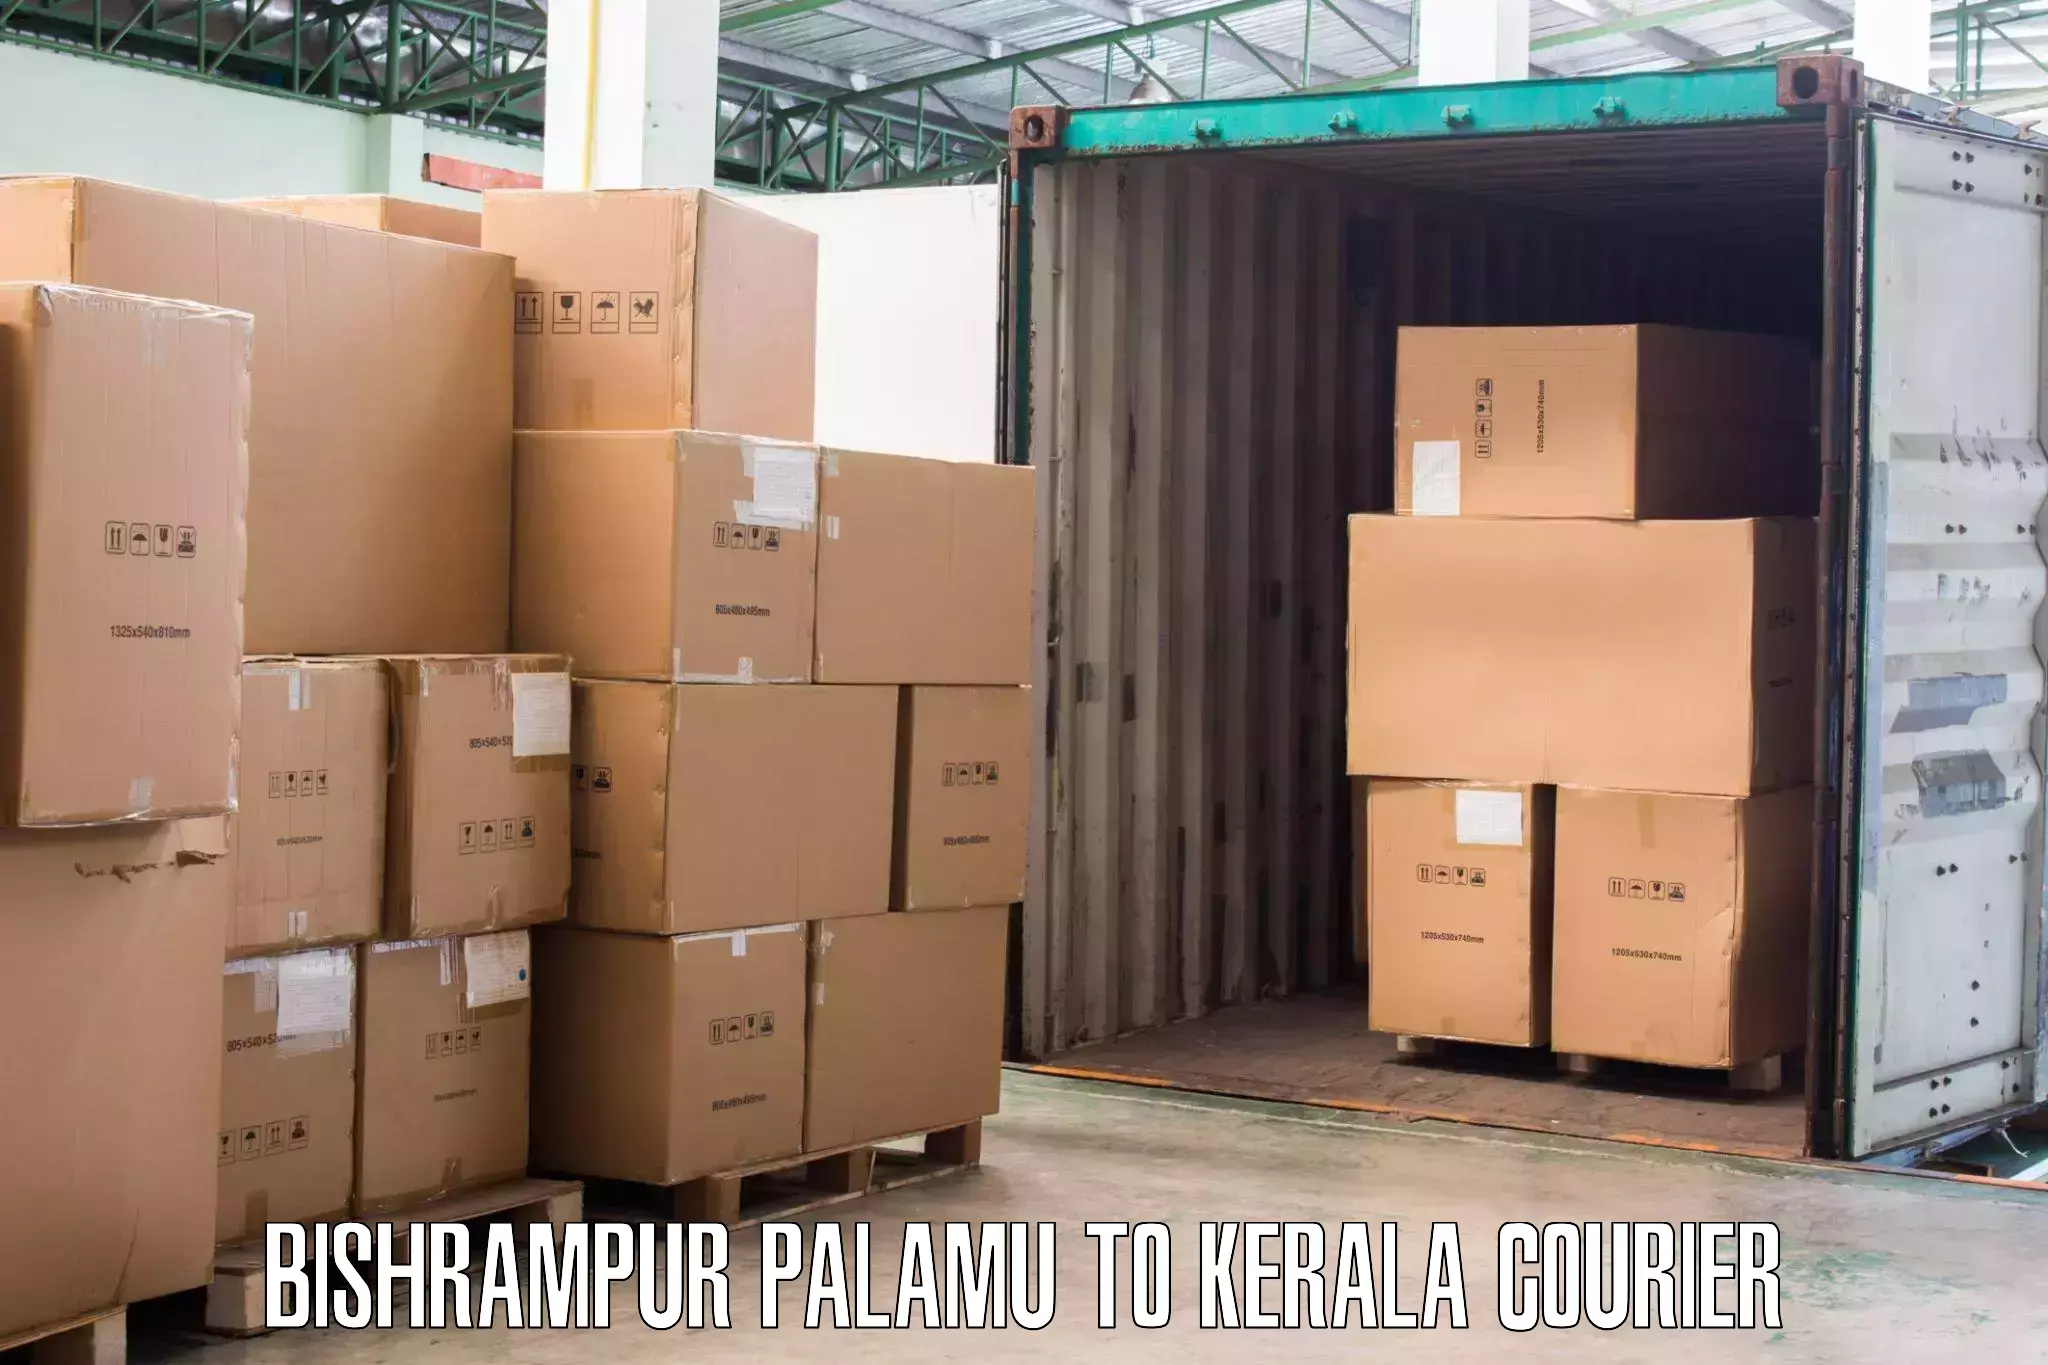 Professional furniture transport Bishrampur Palamu to Palakkad